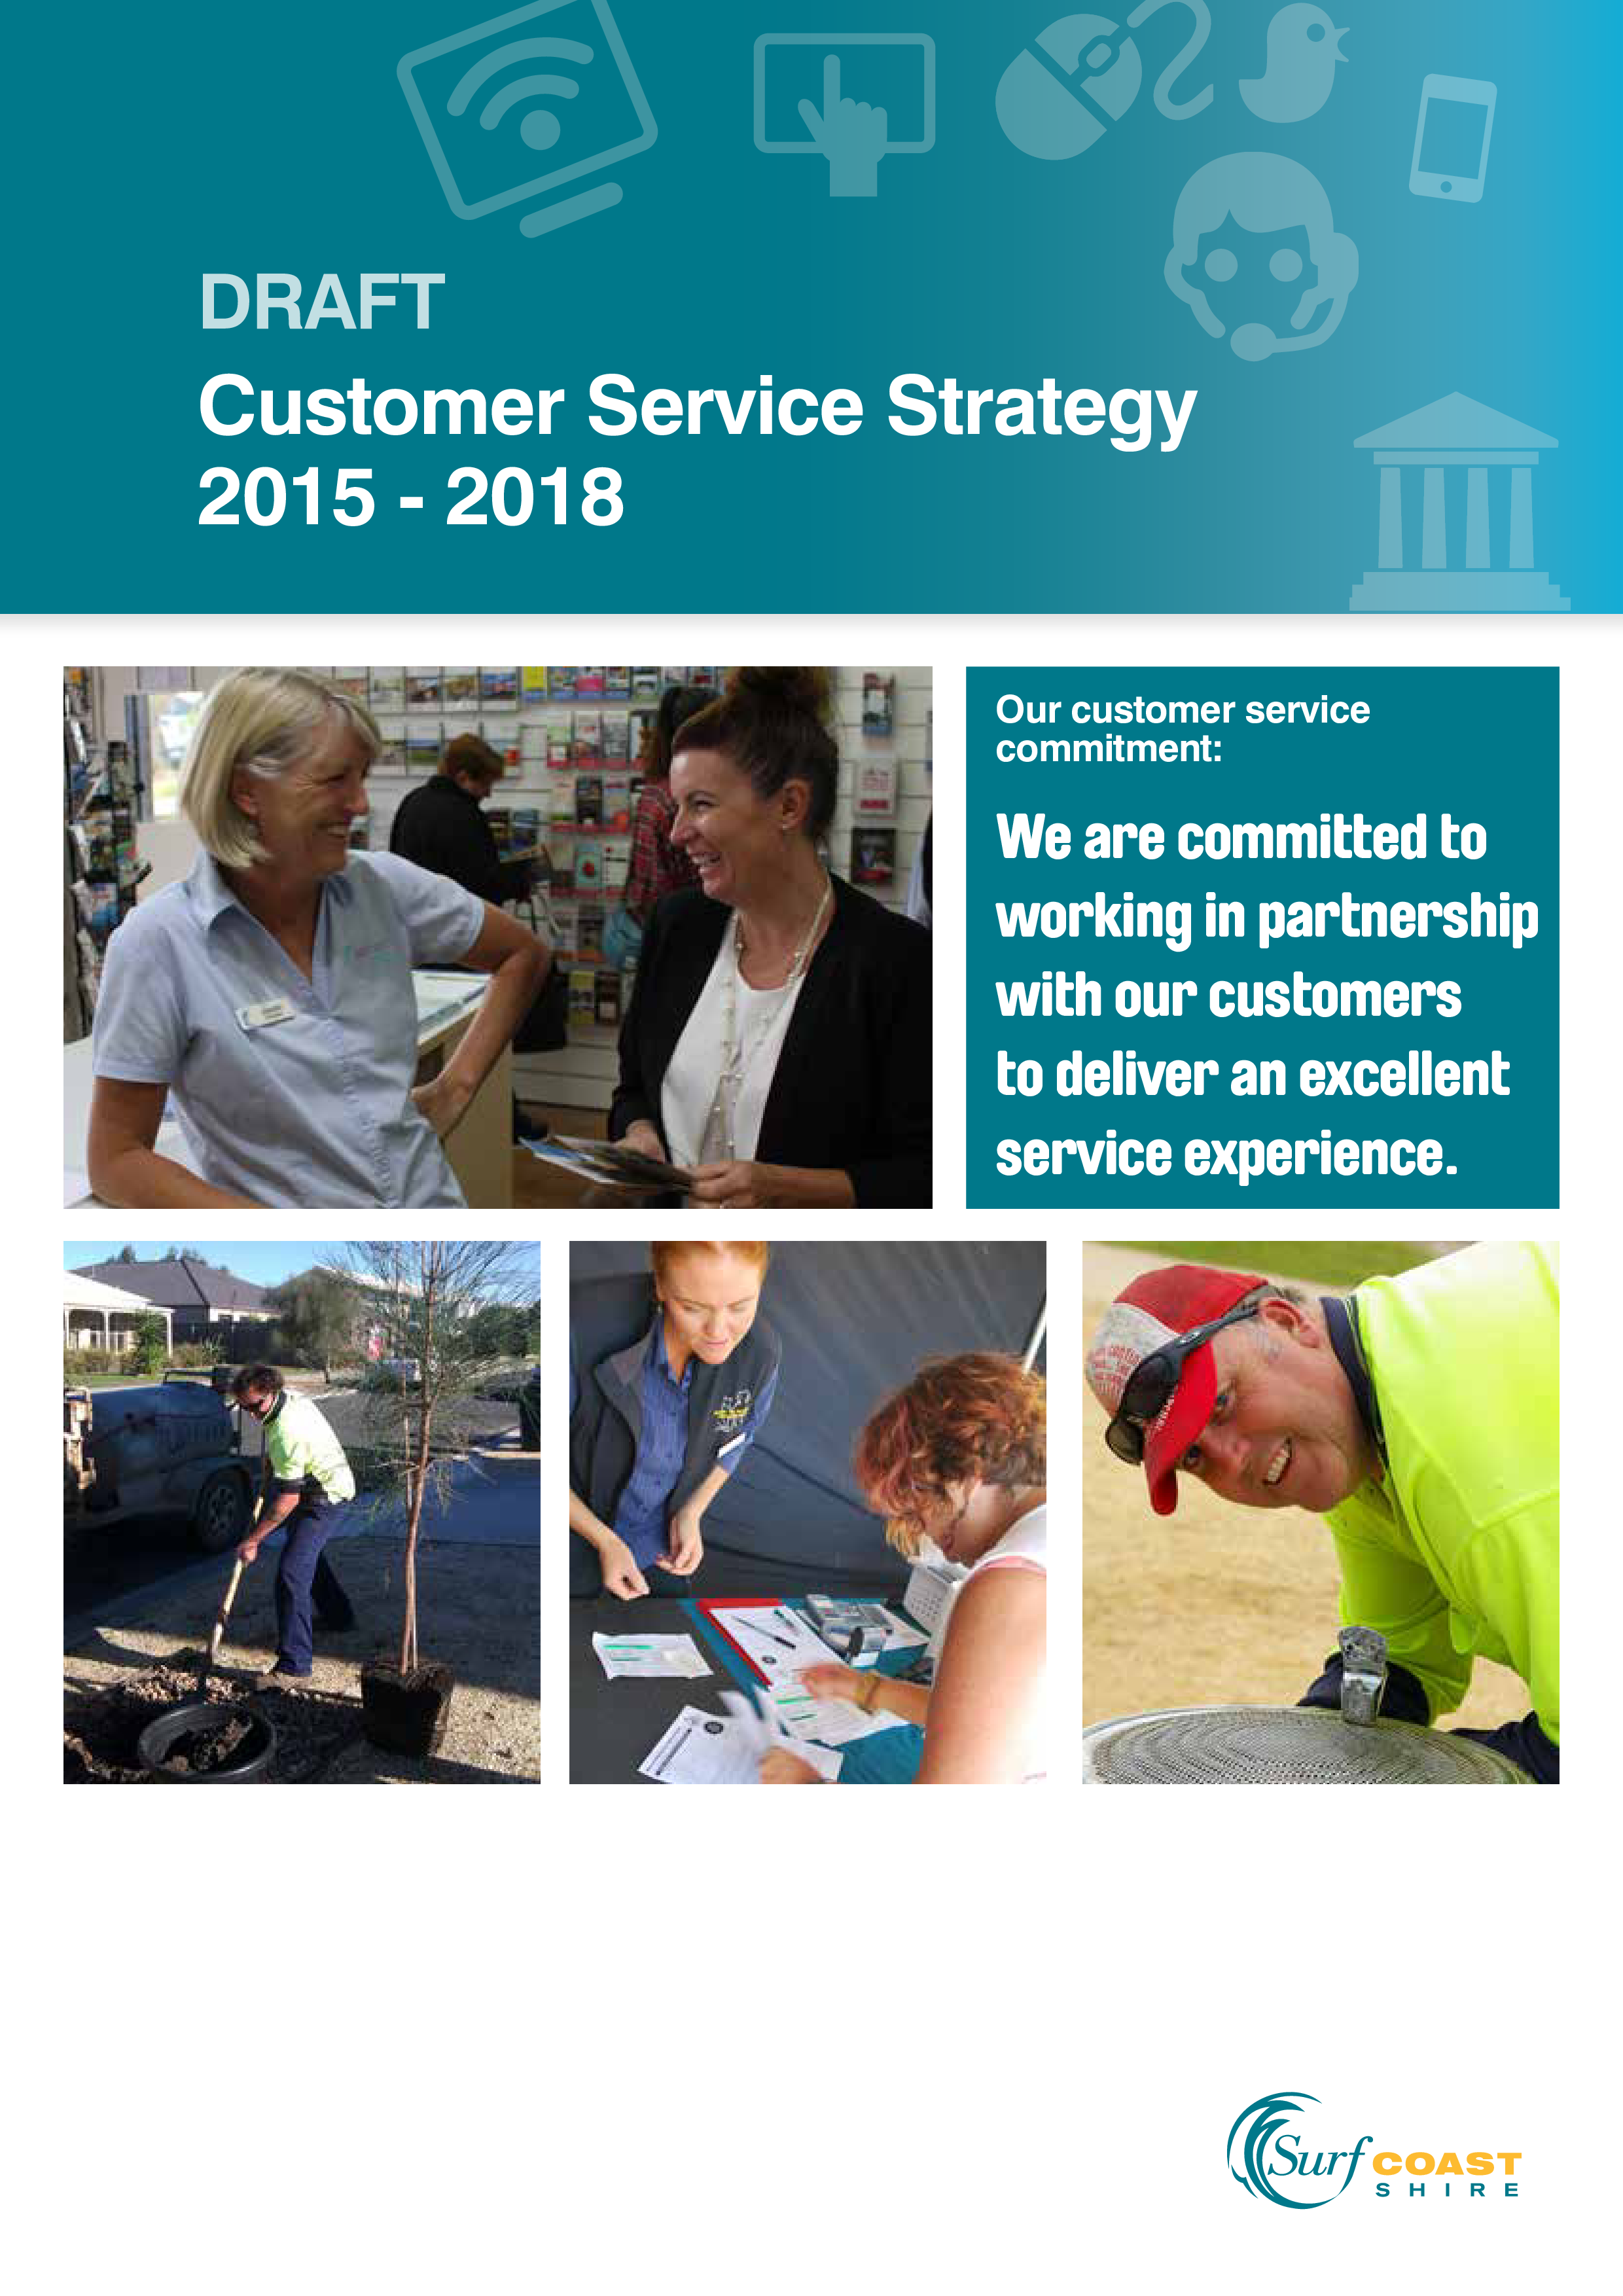 customer service strategy plantilla imagen principal